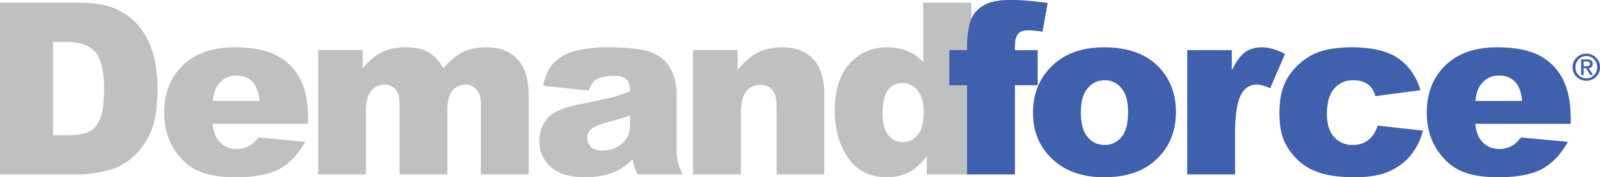 demandforce logo